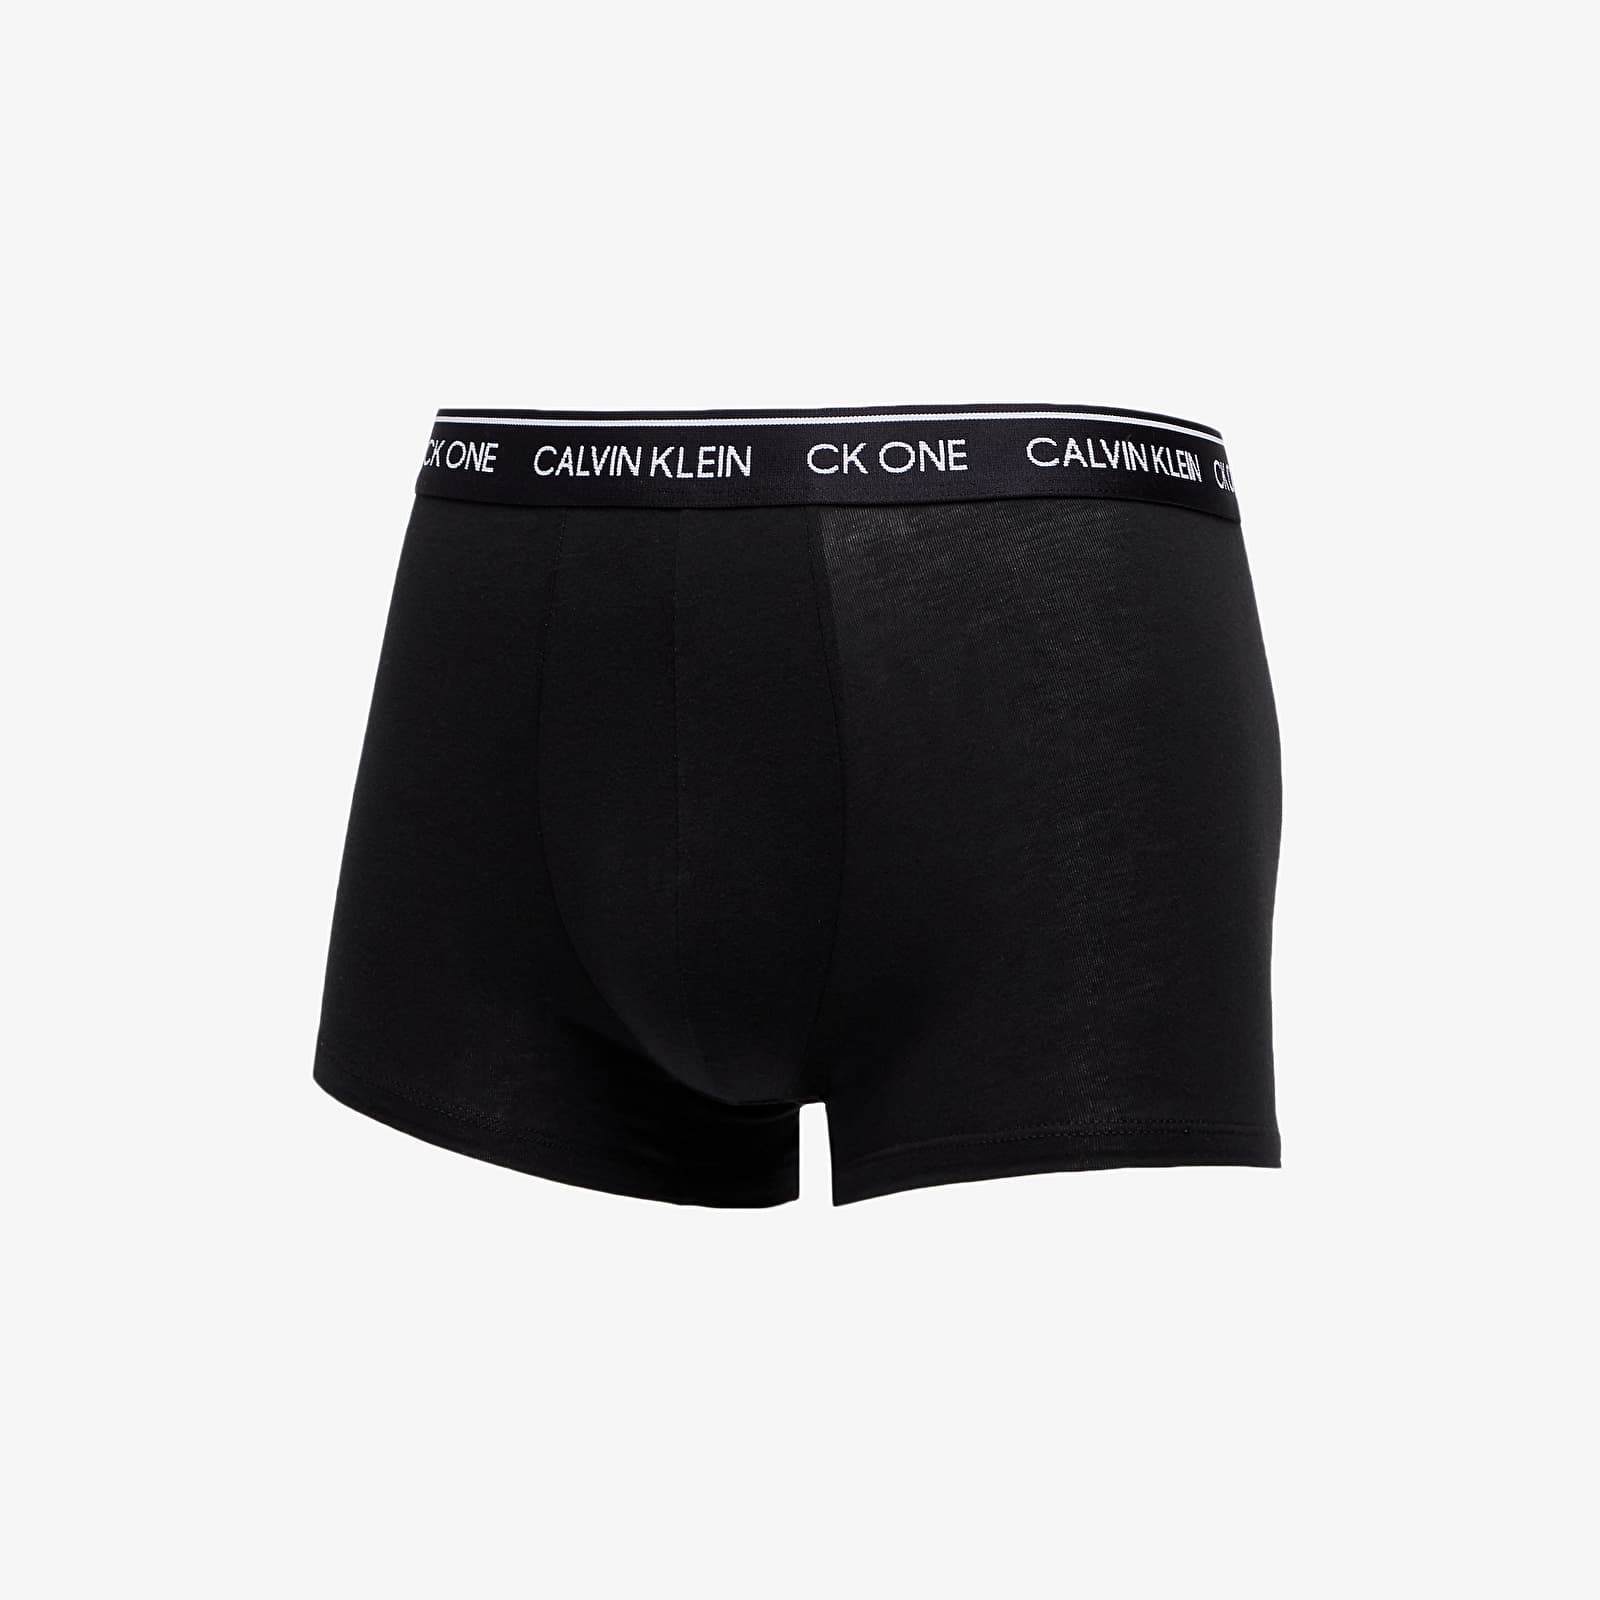 Bokserki Calvin Klein Trunks 1-Pack Black